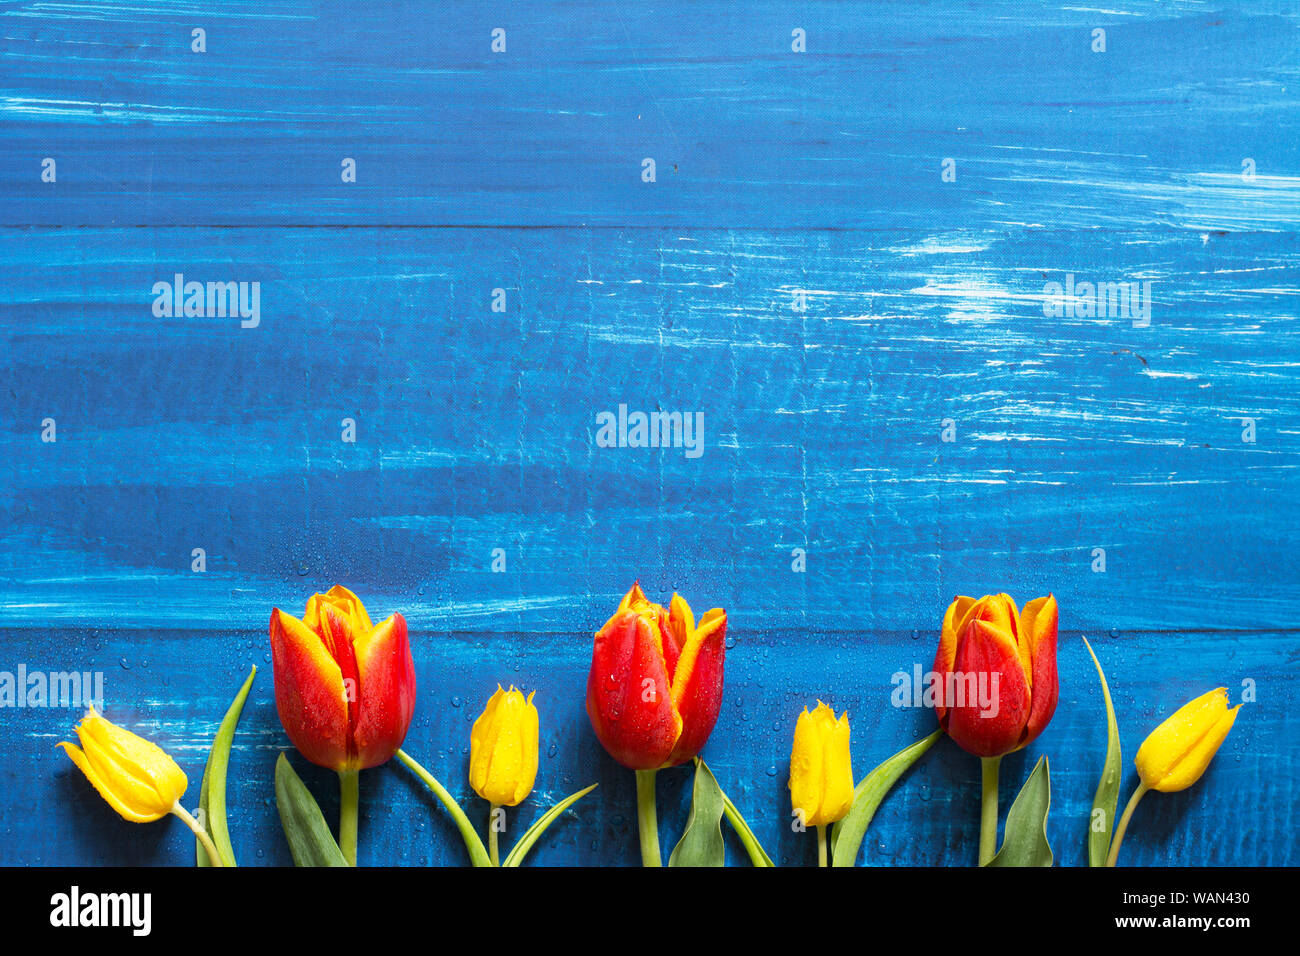 Die Feder mit einer Reihe von roten und gelben Tulpen auf Blau Holz- Hintergrund - text Raum Stockfoto